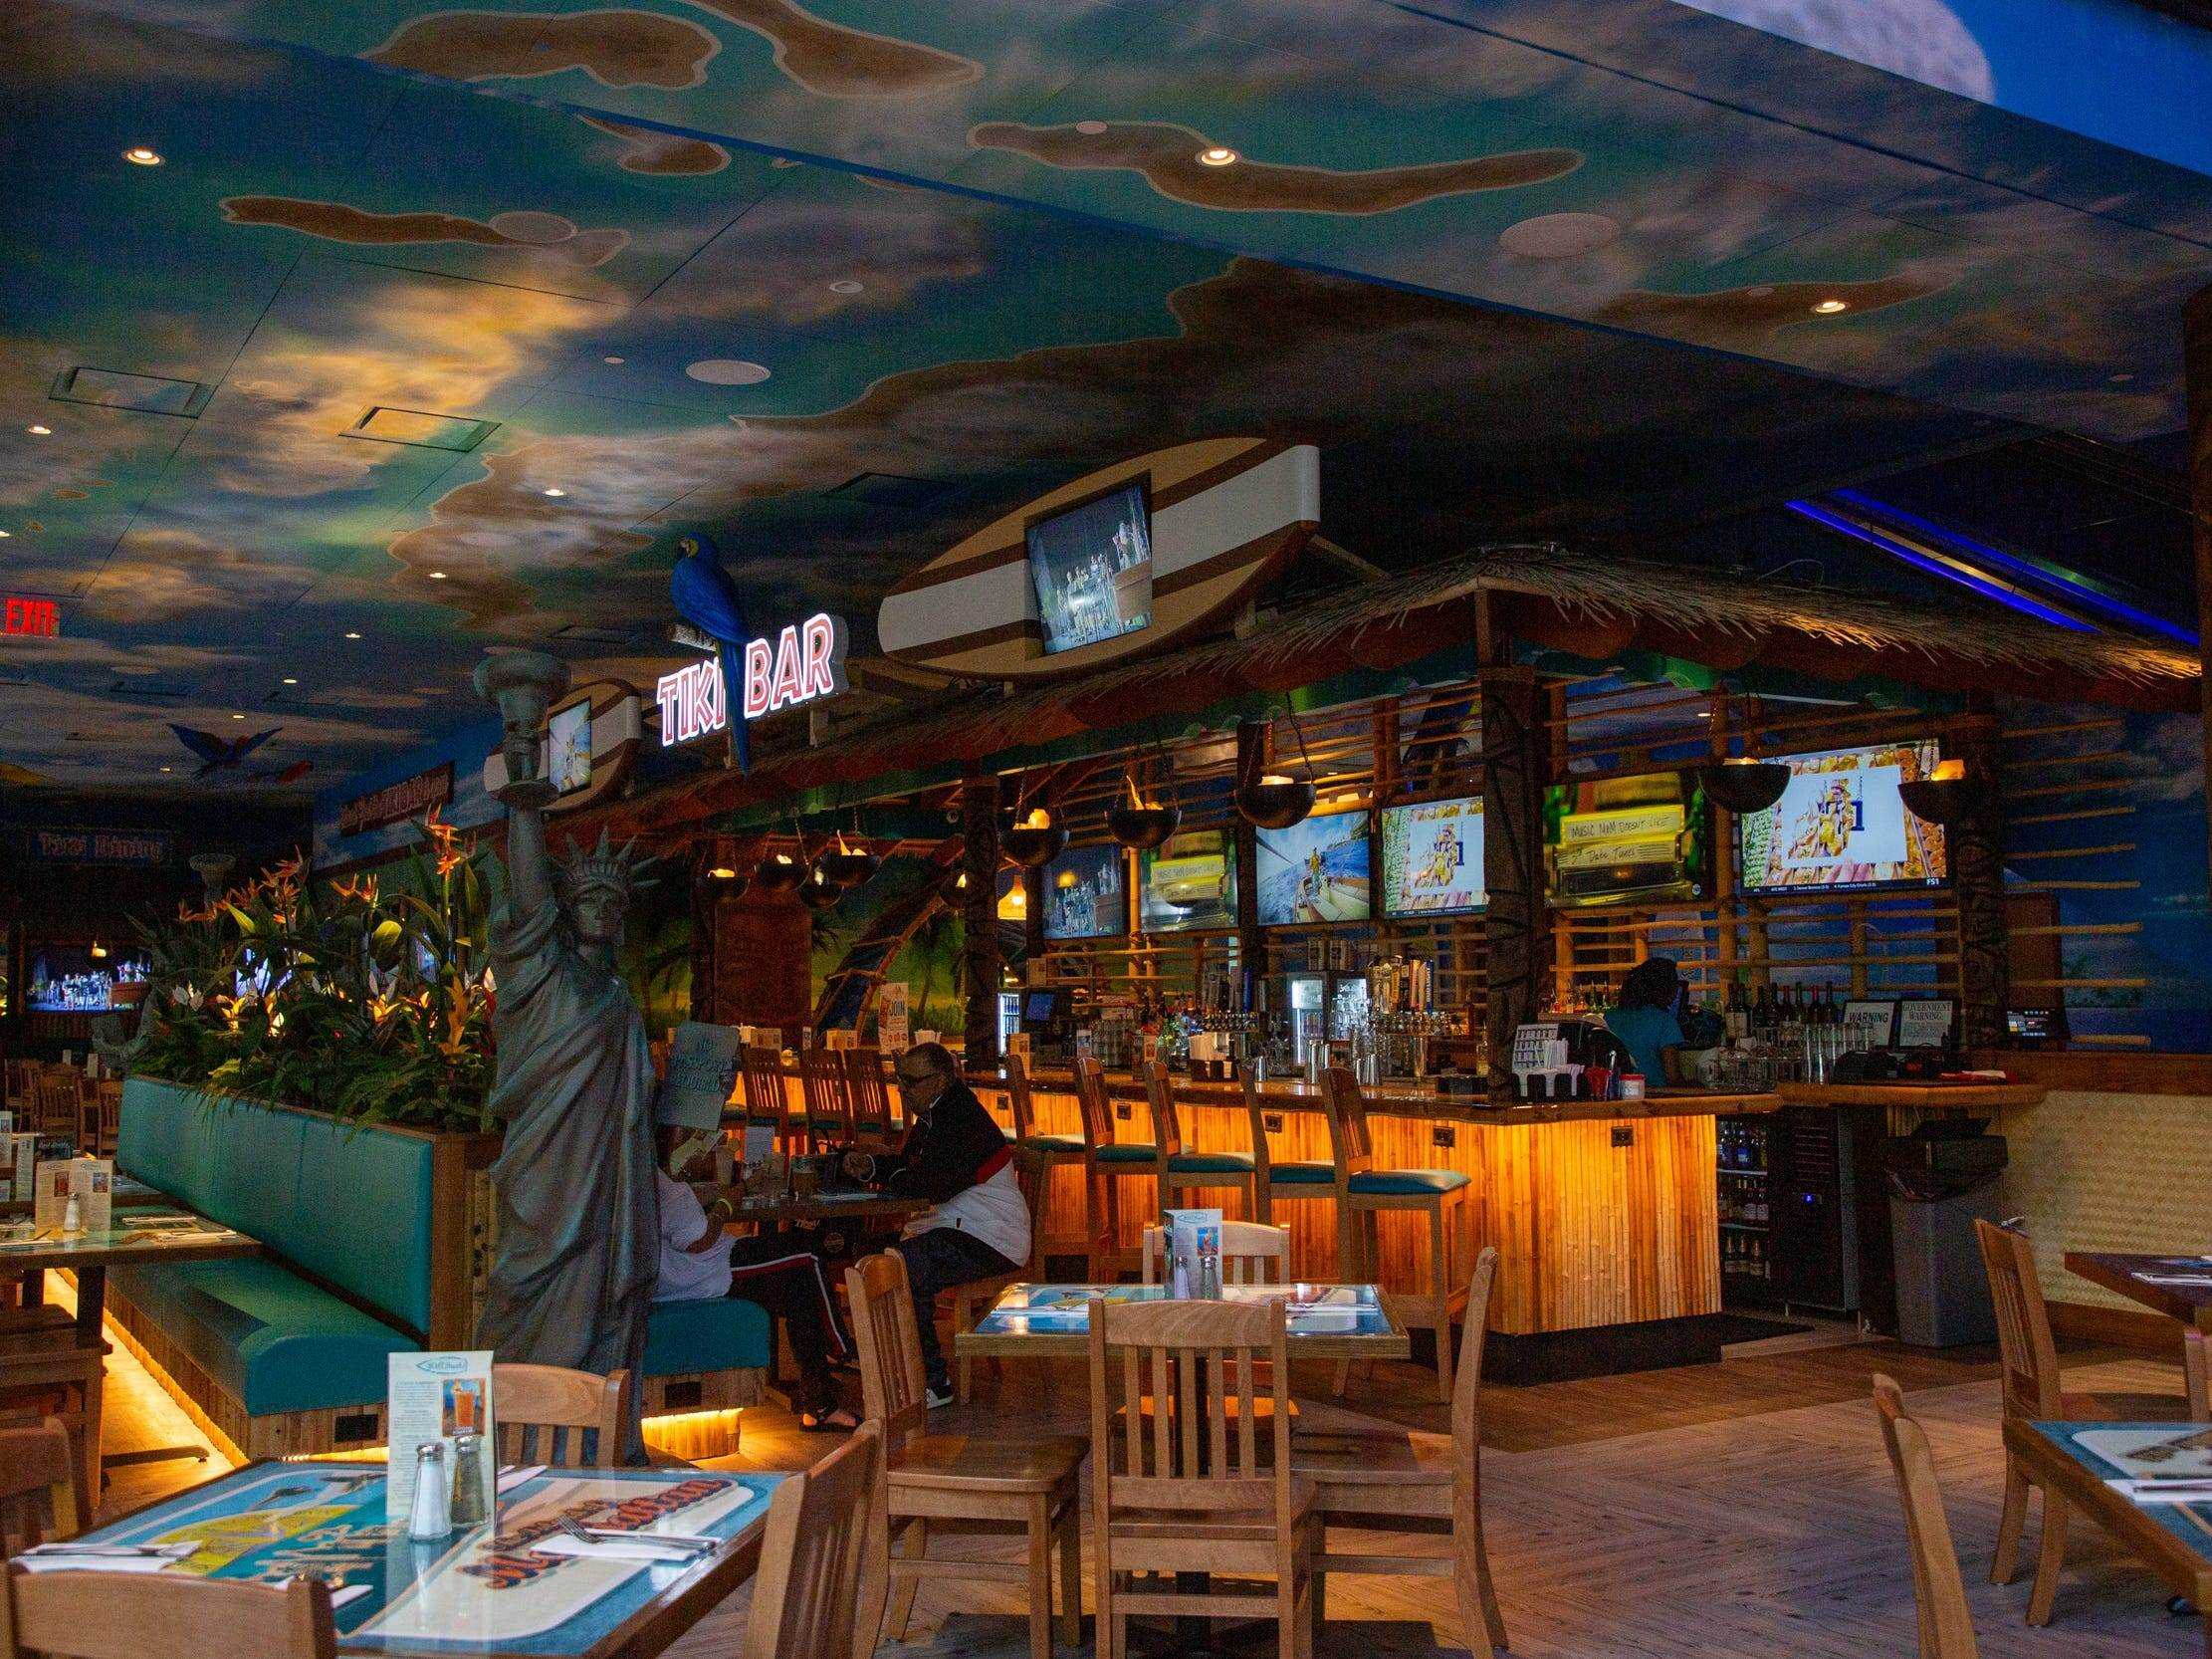 das zweistöckige Restaurant Margaritaville und seine Bar im ersten Stock